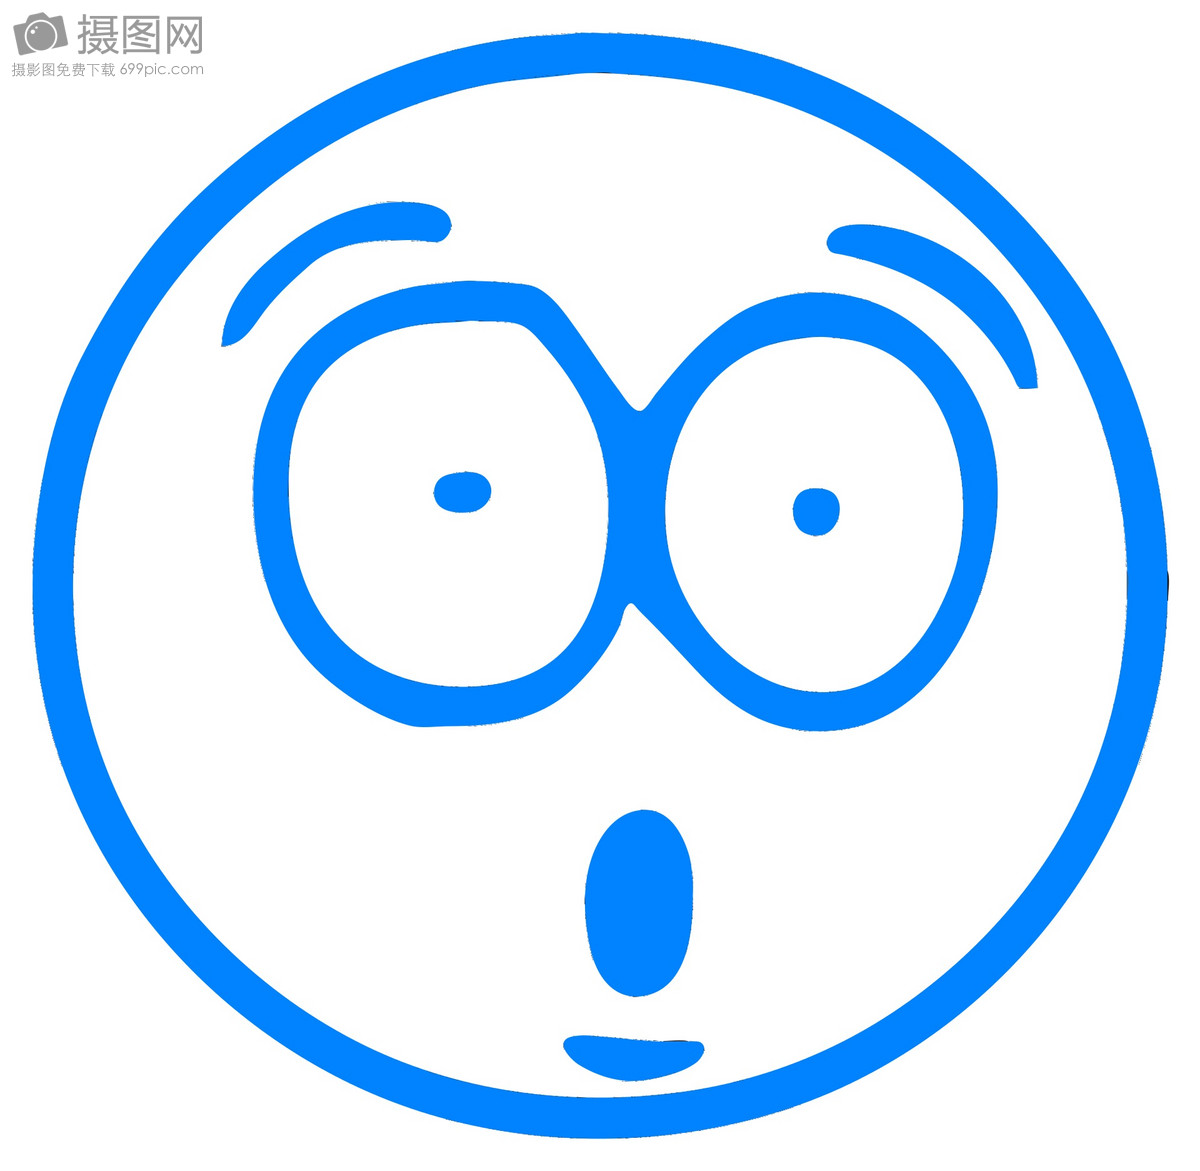 😮 吃惊 Emoji图片下载: 高清大图、动画图像和矢量图形 | EmojiAll